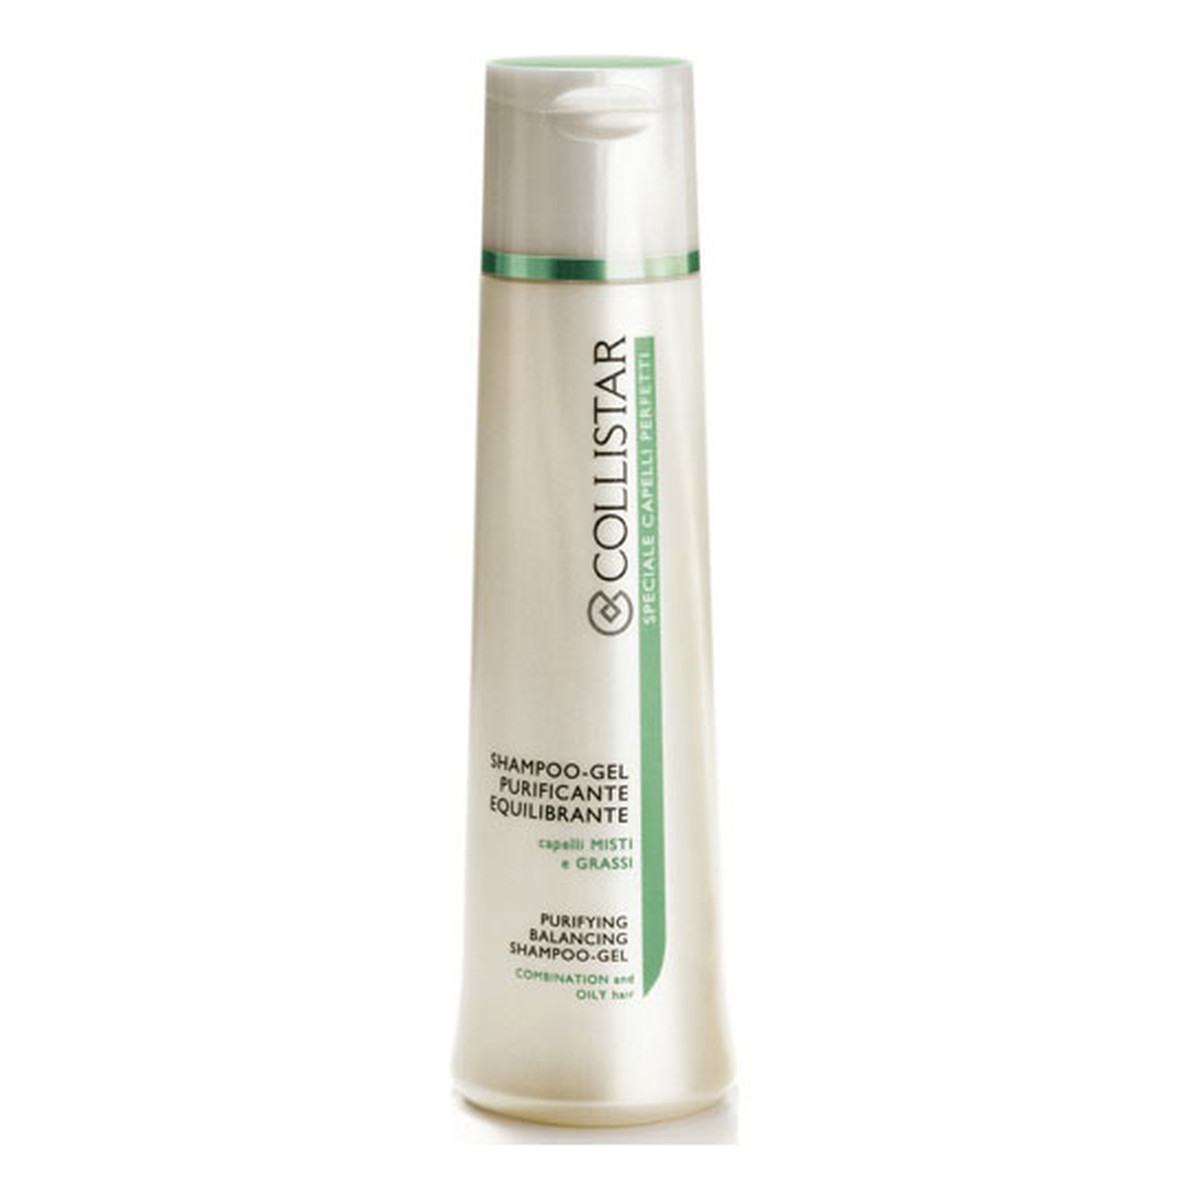 Collistar Purifying Balancing Shampoo-Gel Oczyszczający szampon-żel do włosów przetłuszczających się 250ml